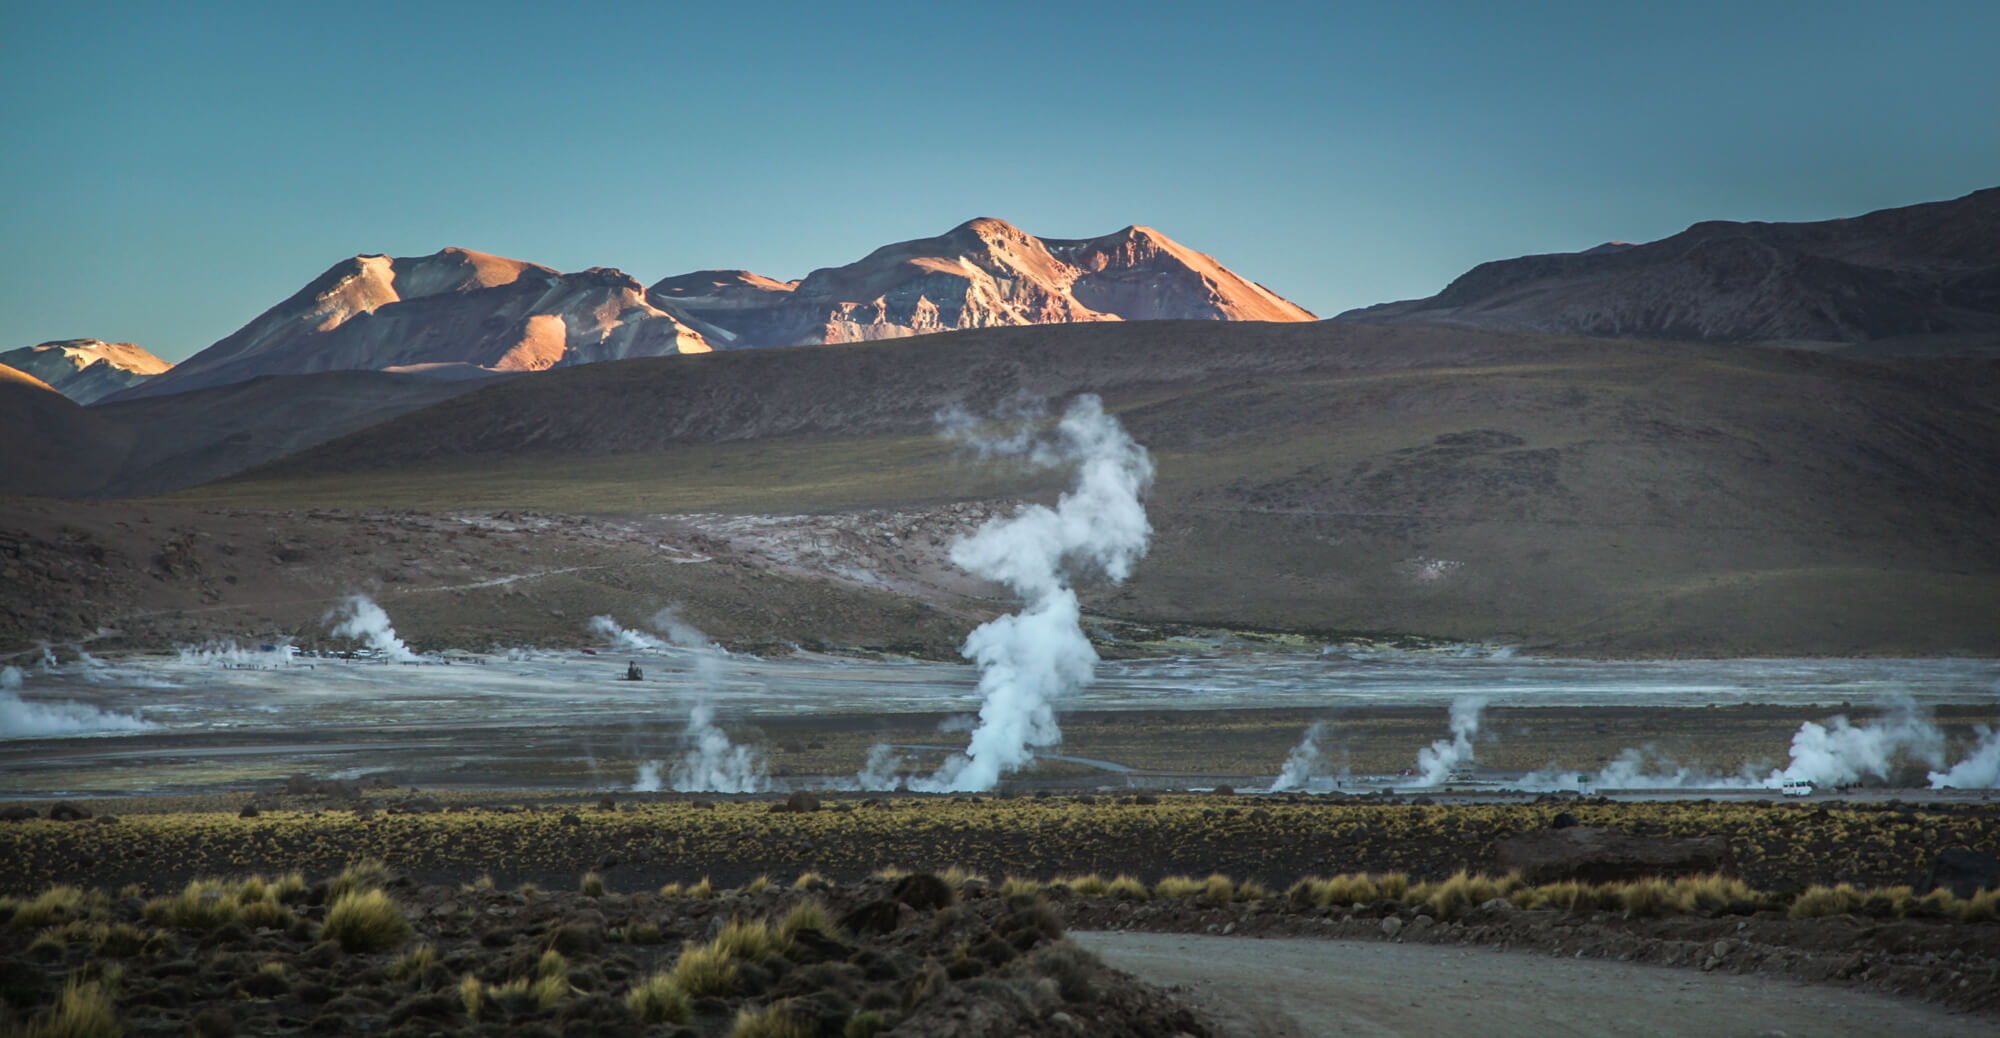 El Tatio geysers at dawn